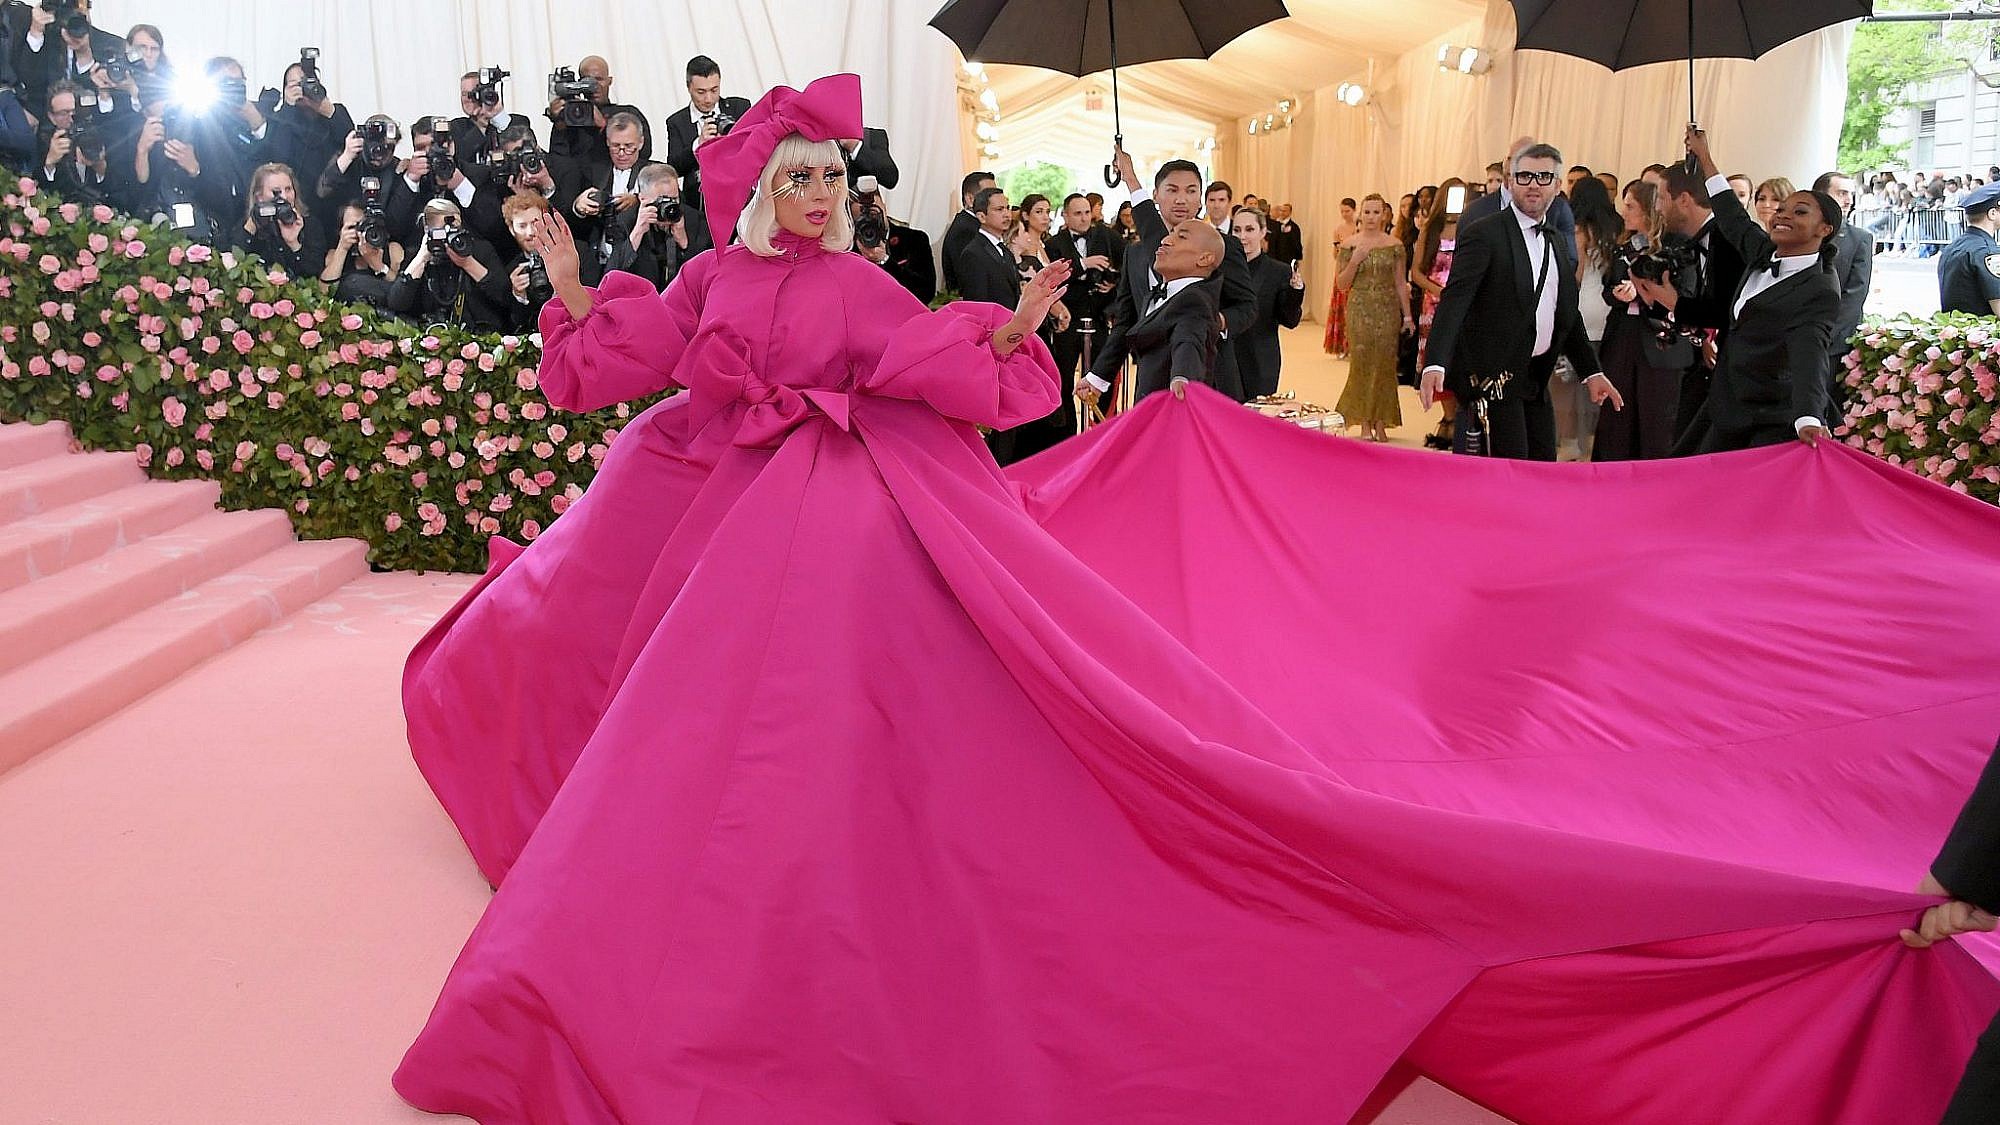 מלכת השטיחים האדומים ואחת המארחות של האירוע הגיעה בשמלת שכבות ורודה של ברנדון מקסוול, את השכבות השילה לאט לאט ולבסוף נשארה בתחתונים וחזיה, ליידי גאגא | צילום: Neilson Barnard/Getty Images